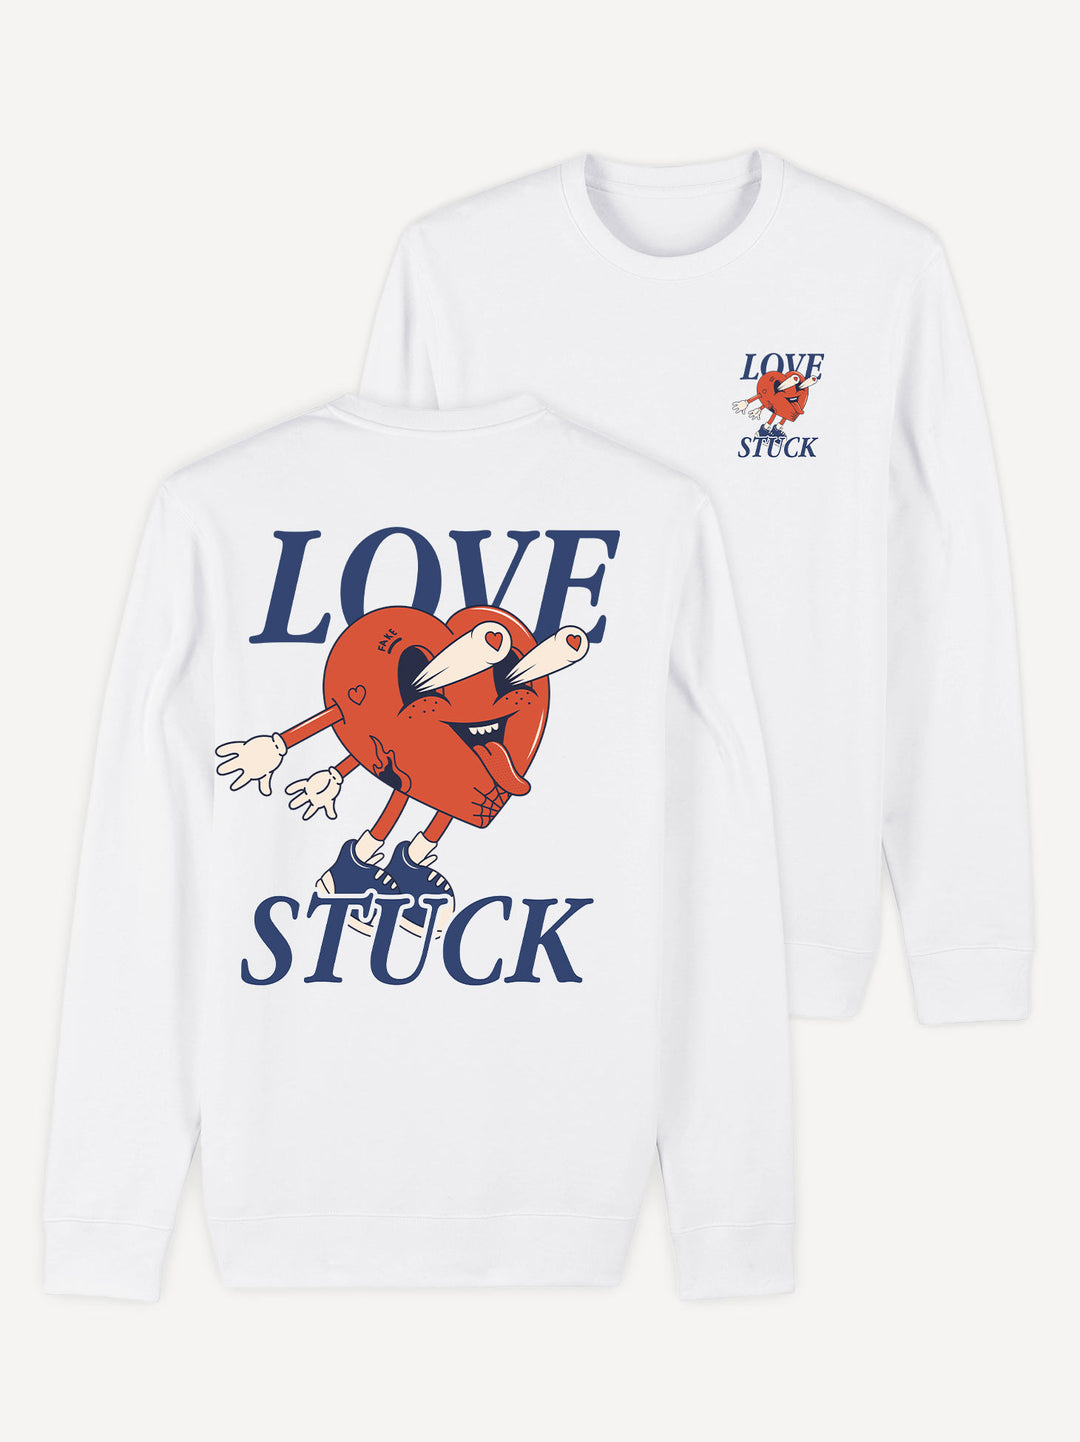 Love Stuck Sweatshirt